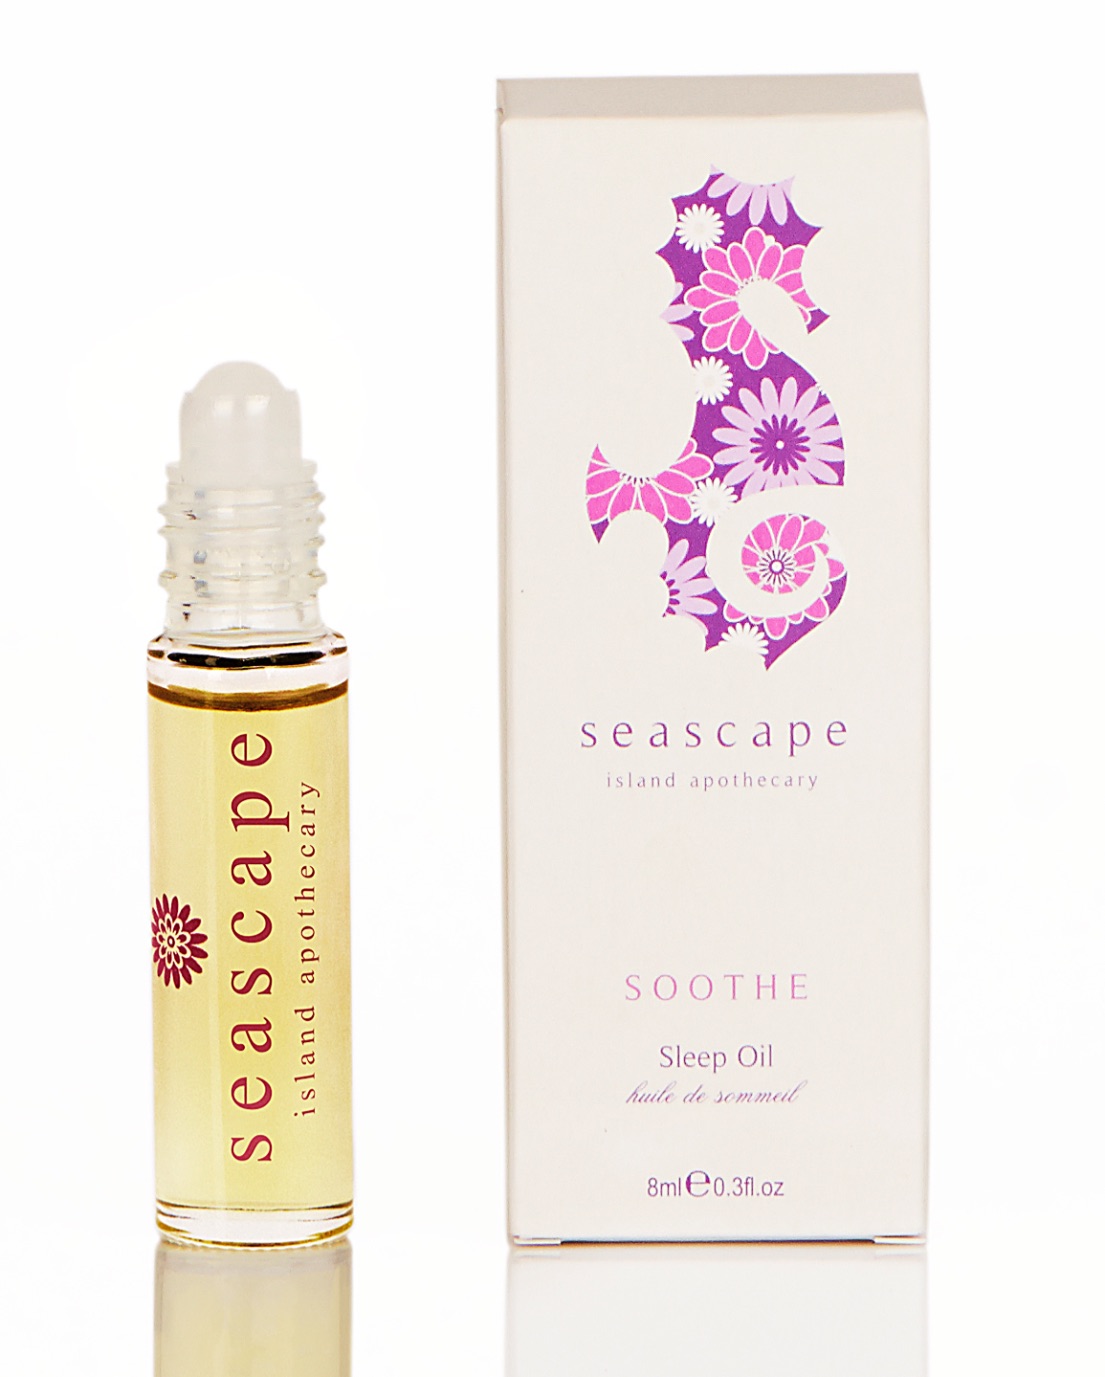 Seascape Island Apothecary Soothe Sleep Oil 8ml